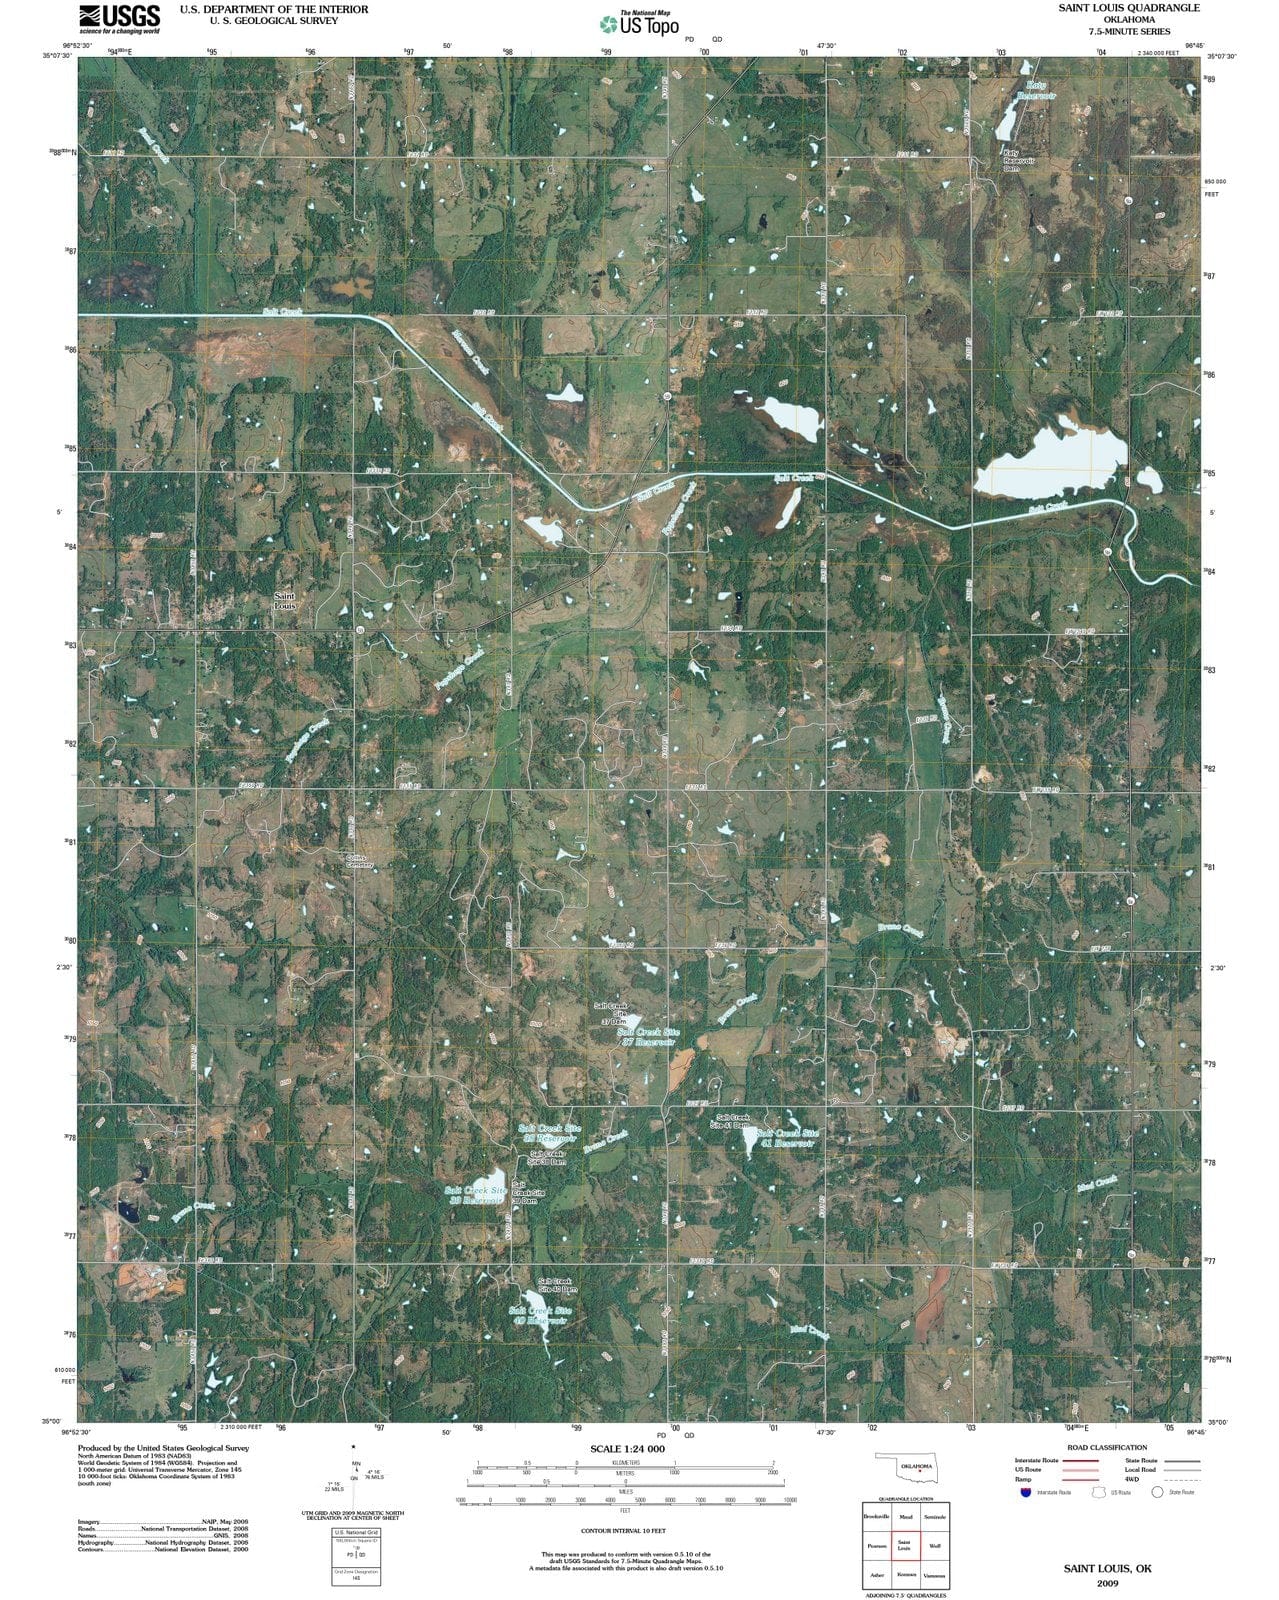 2009 Saint Louis, OK - Oklahoma - USGS Topographic Map